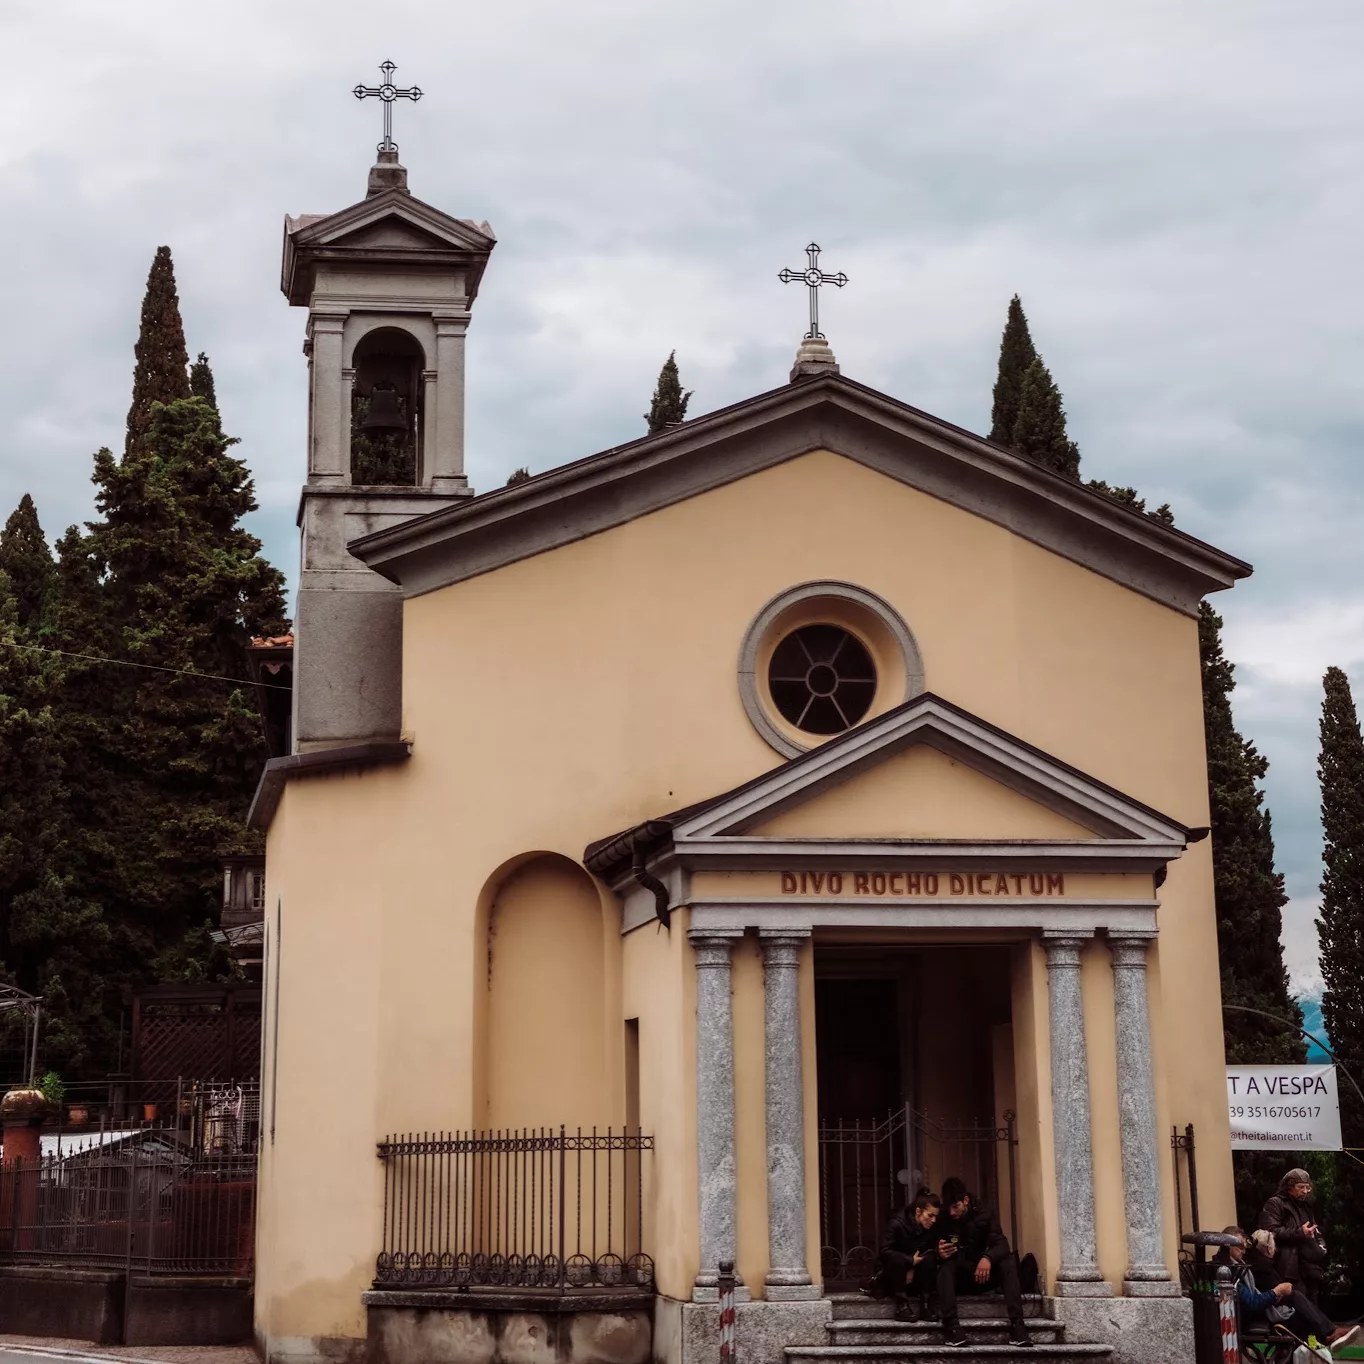 The Church of San Rocco Menaggio